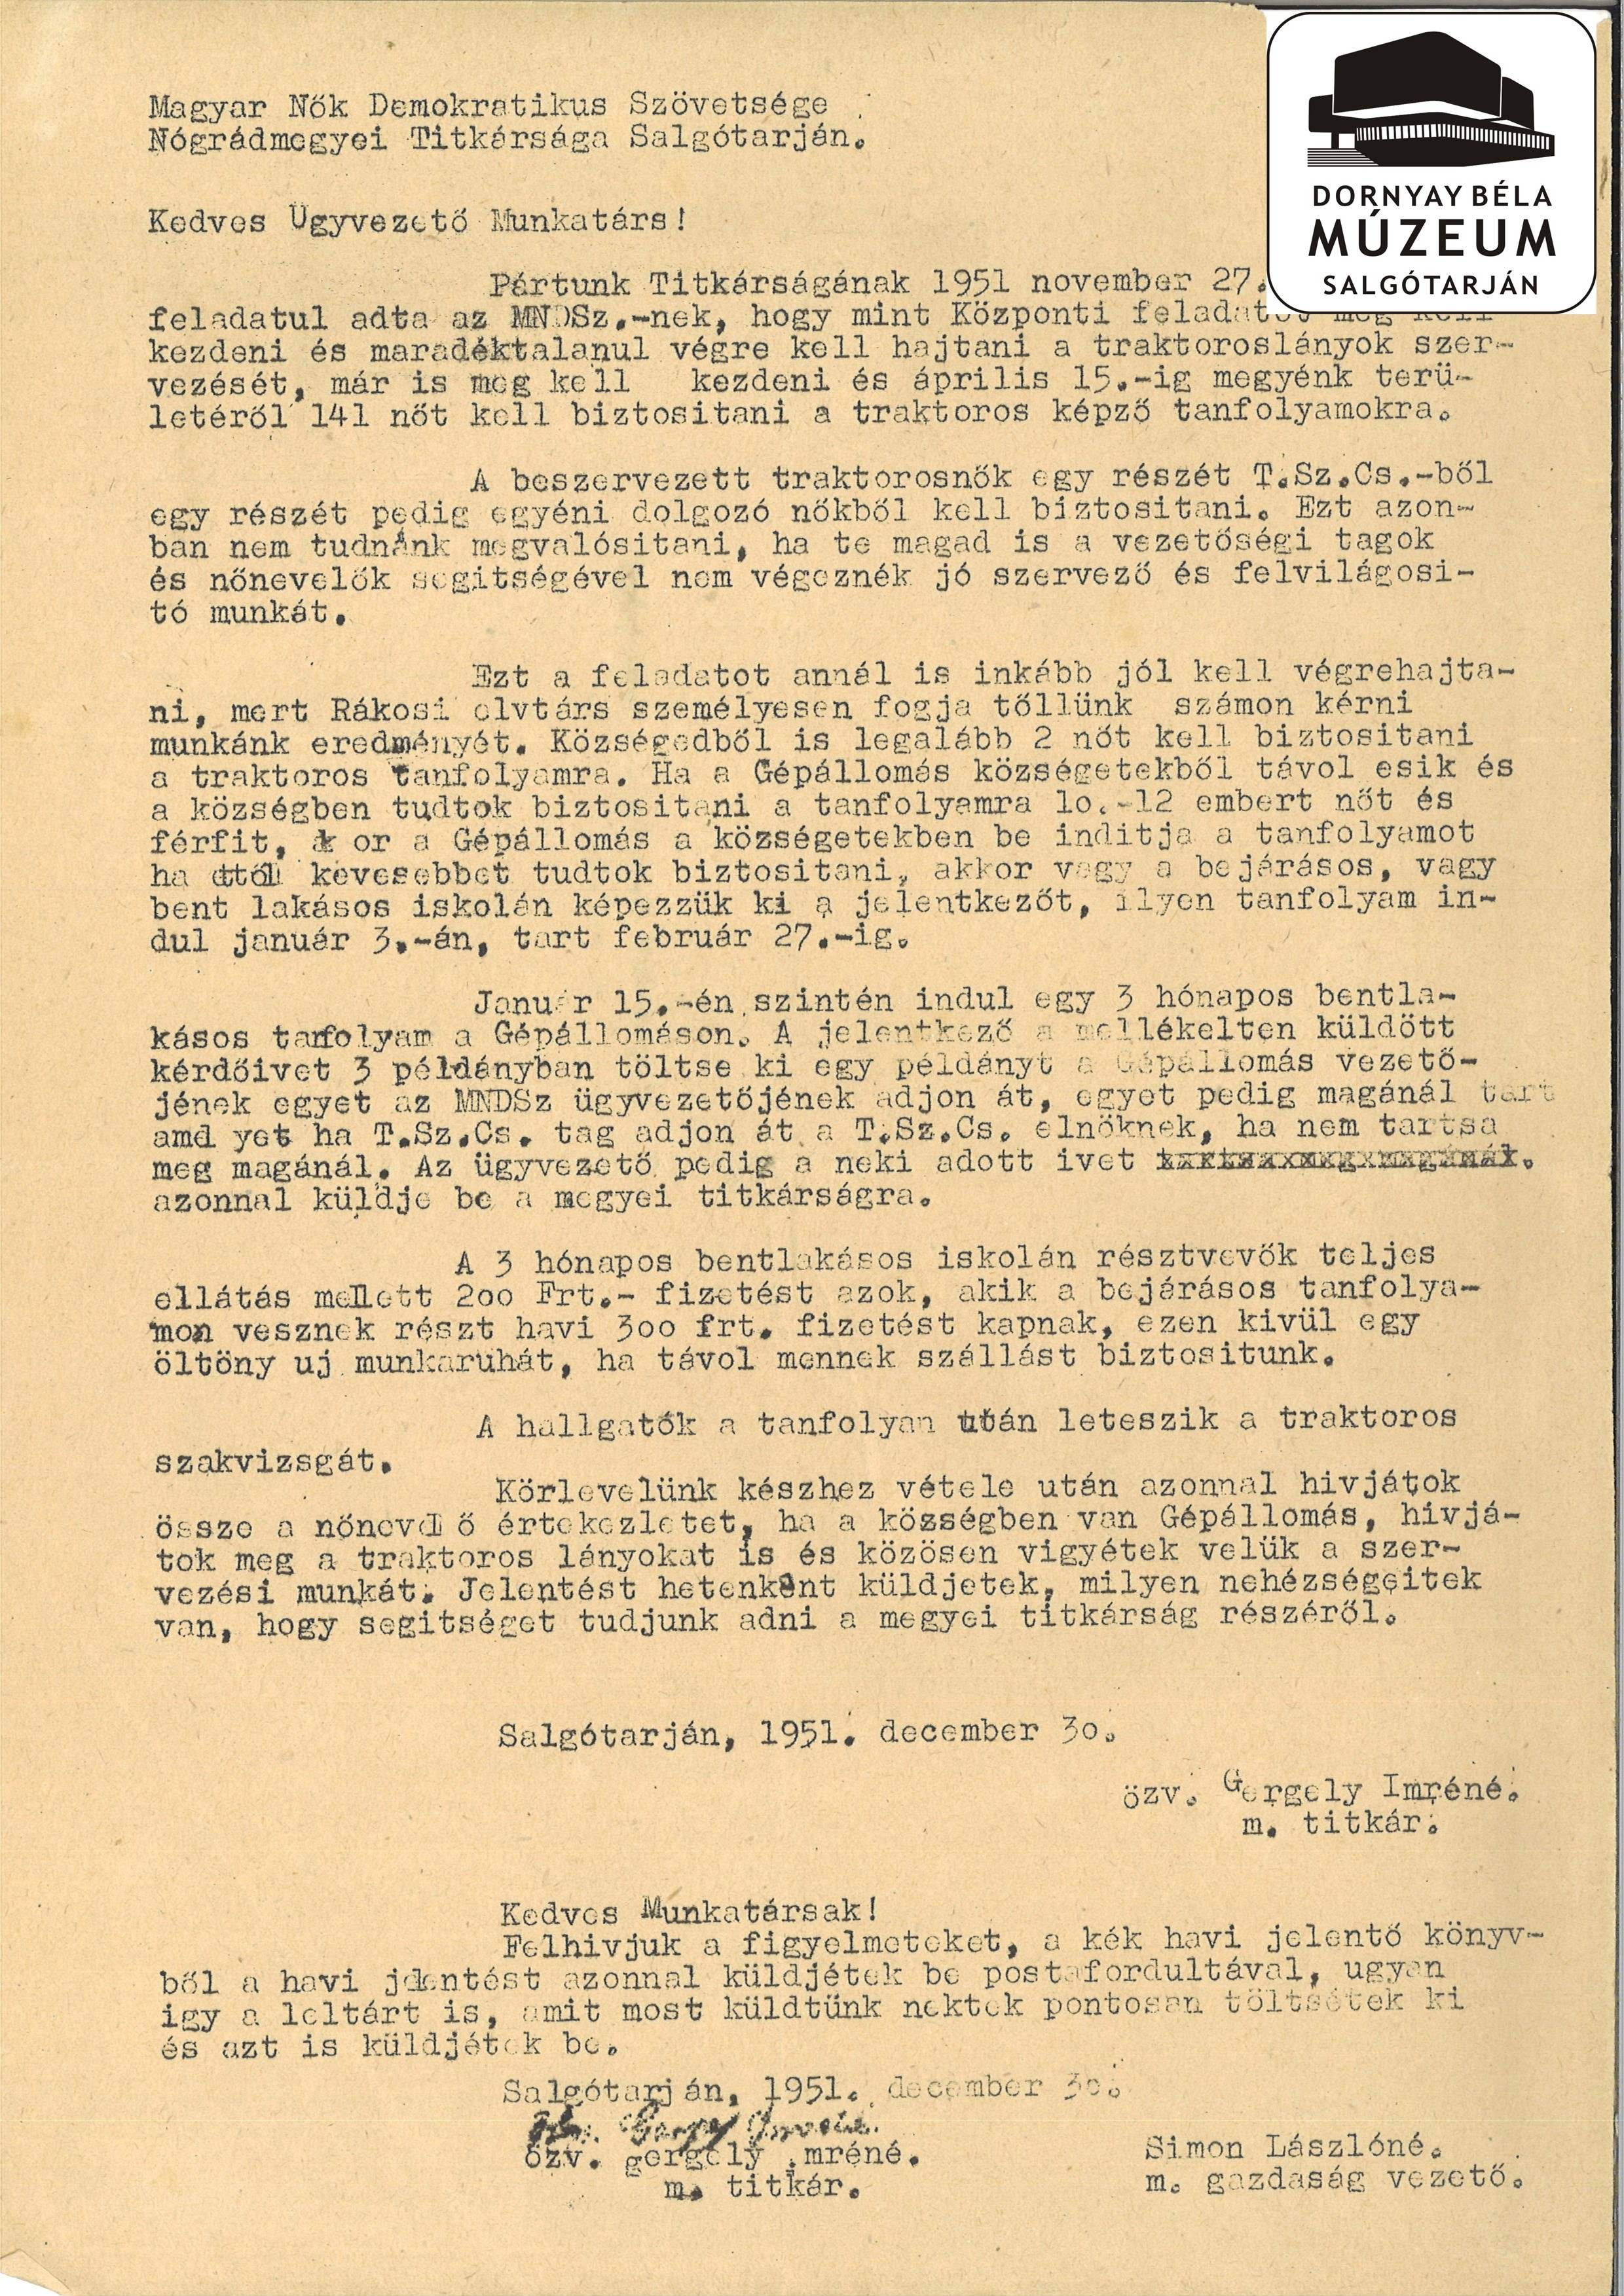 MNDSz Nógrád megyei titkárságnak levelei 1951 (Dornyay Béla Múzeum, Salgótarján CC BY-NC-SA)